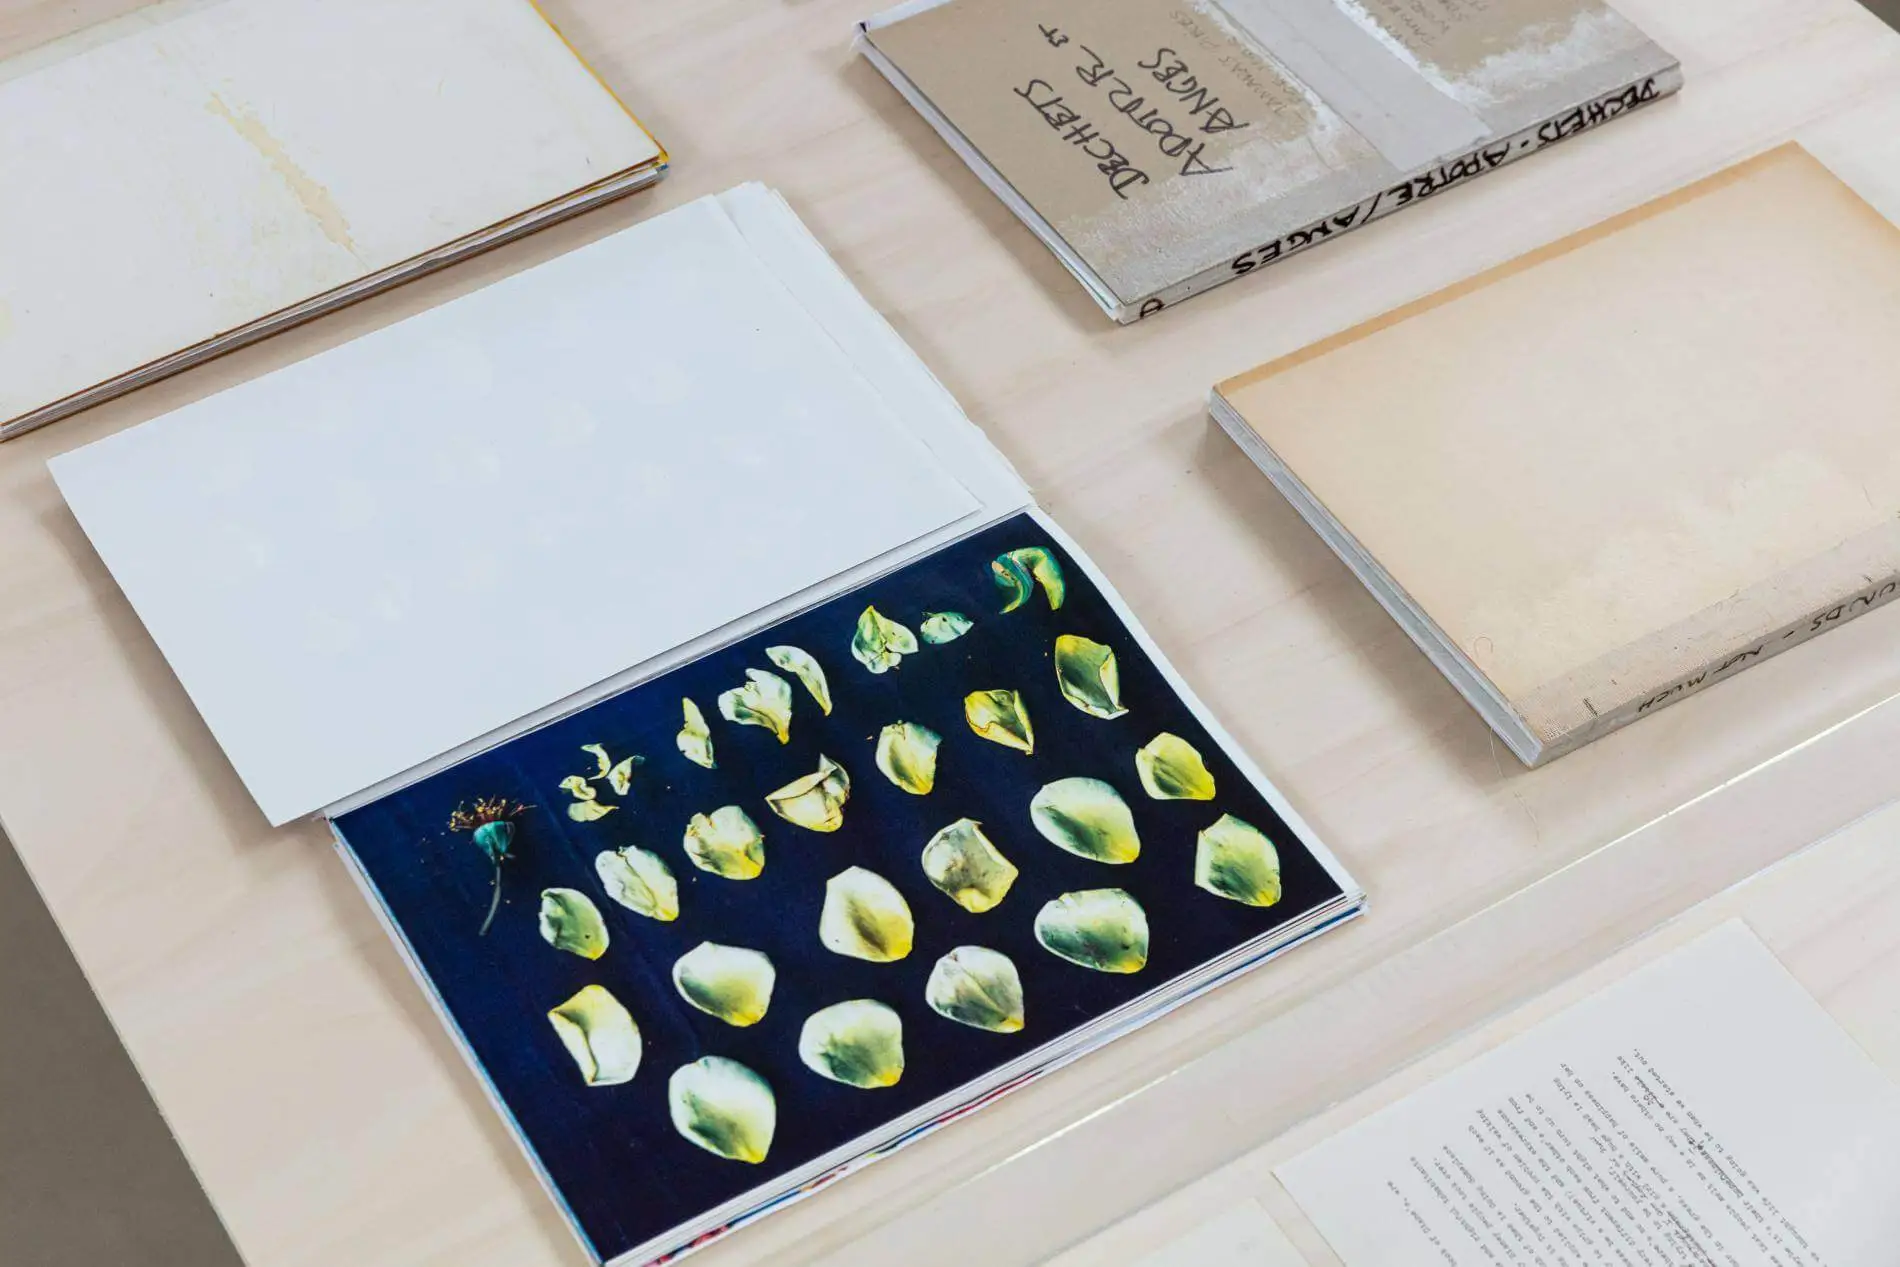 Patti Hill art prints on table alongside books.